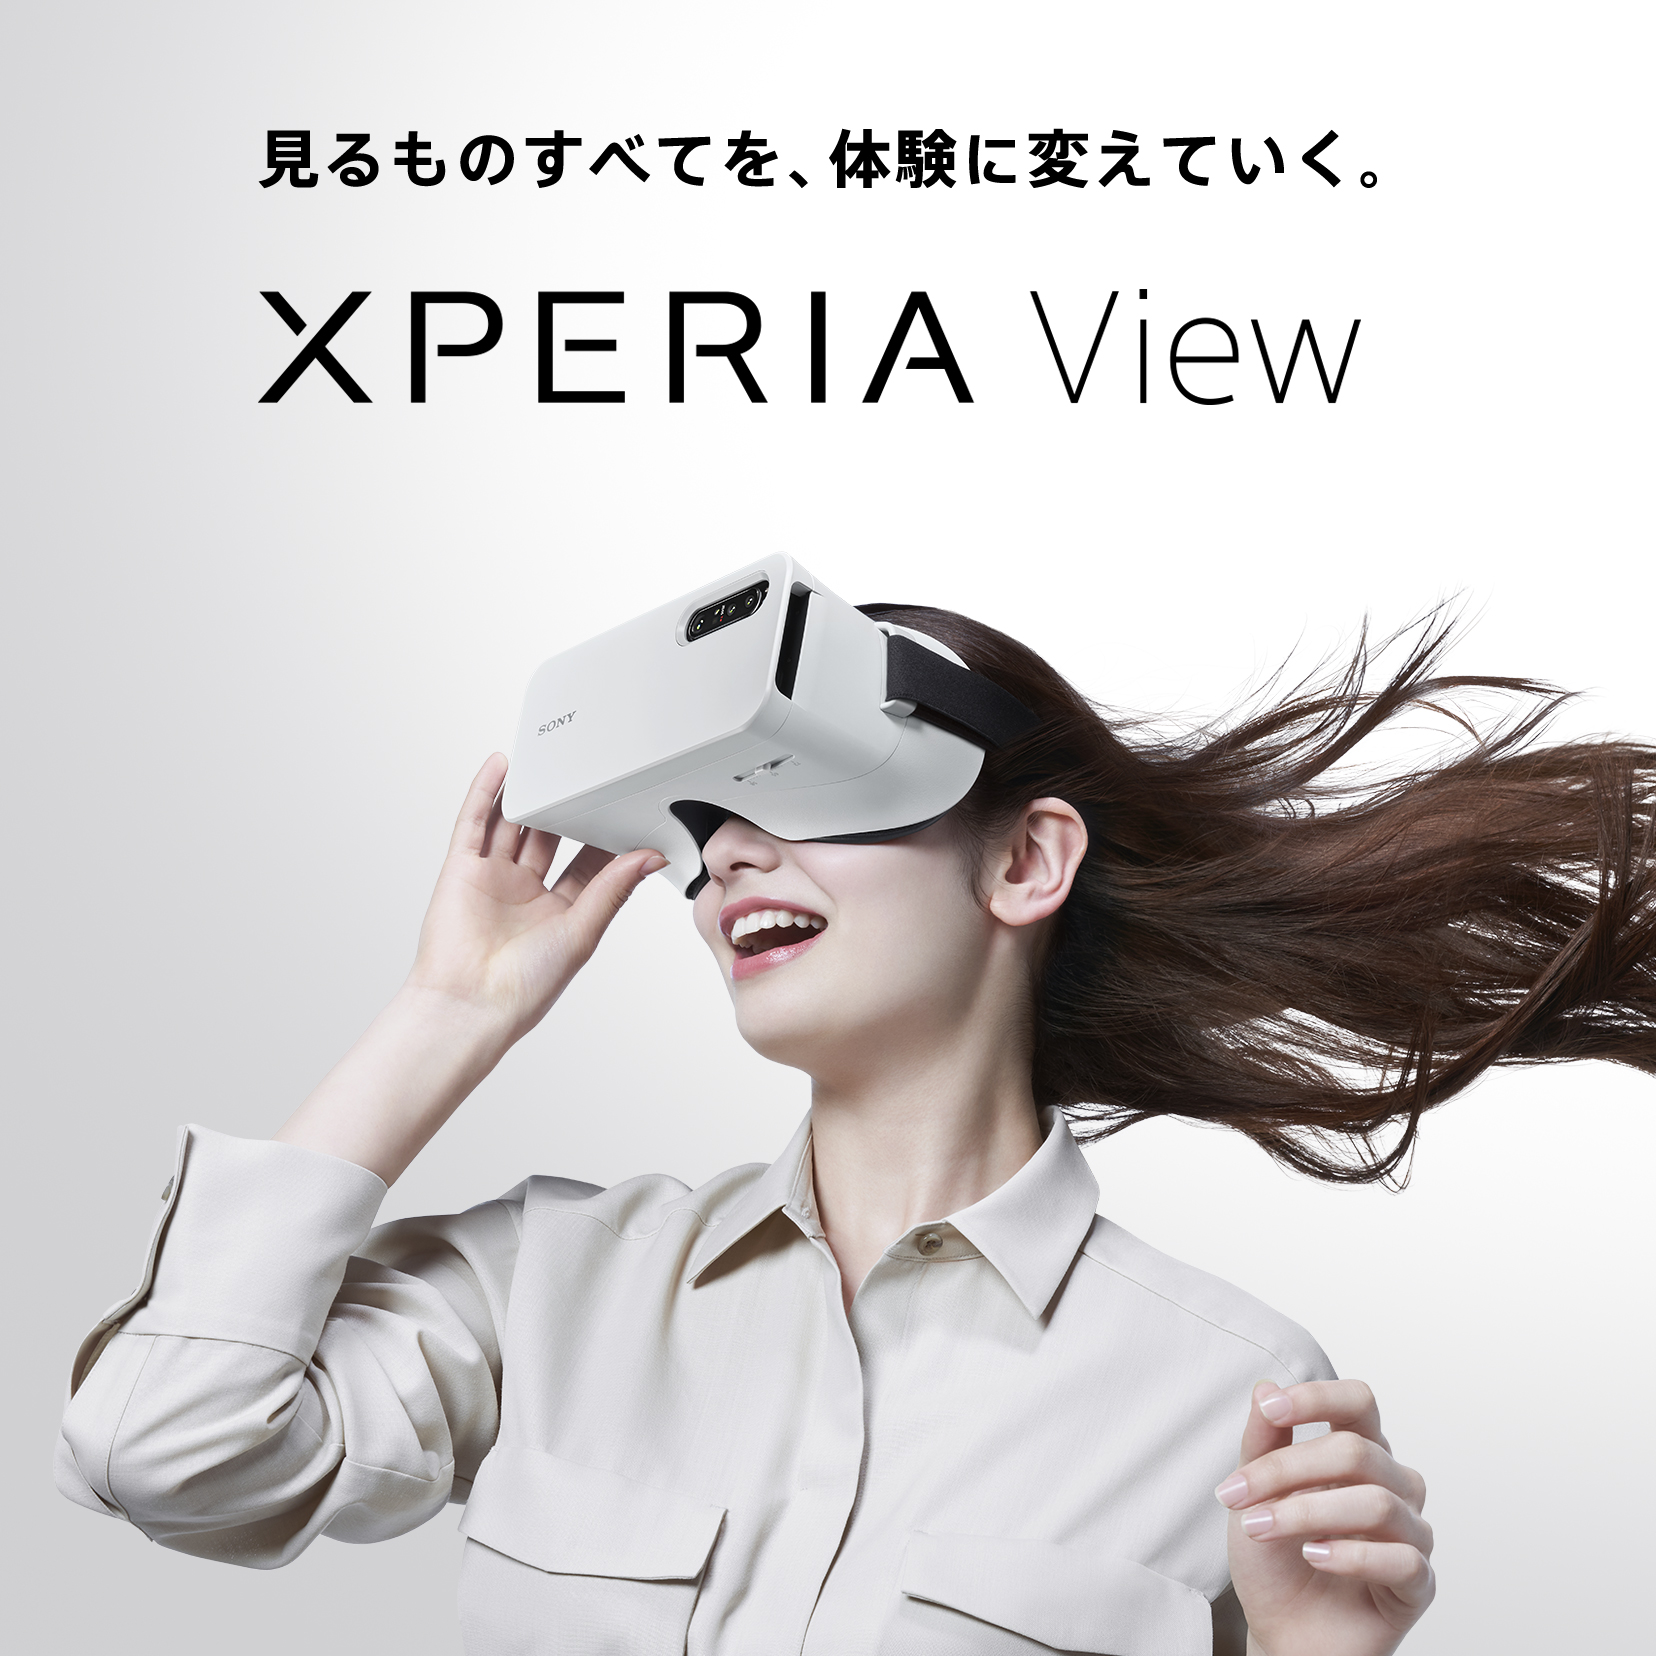 テレビ/映像機器 その他 Xperia View（エクスペリア ビュー） | Xperia（エクスペリア）公式サイト